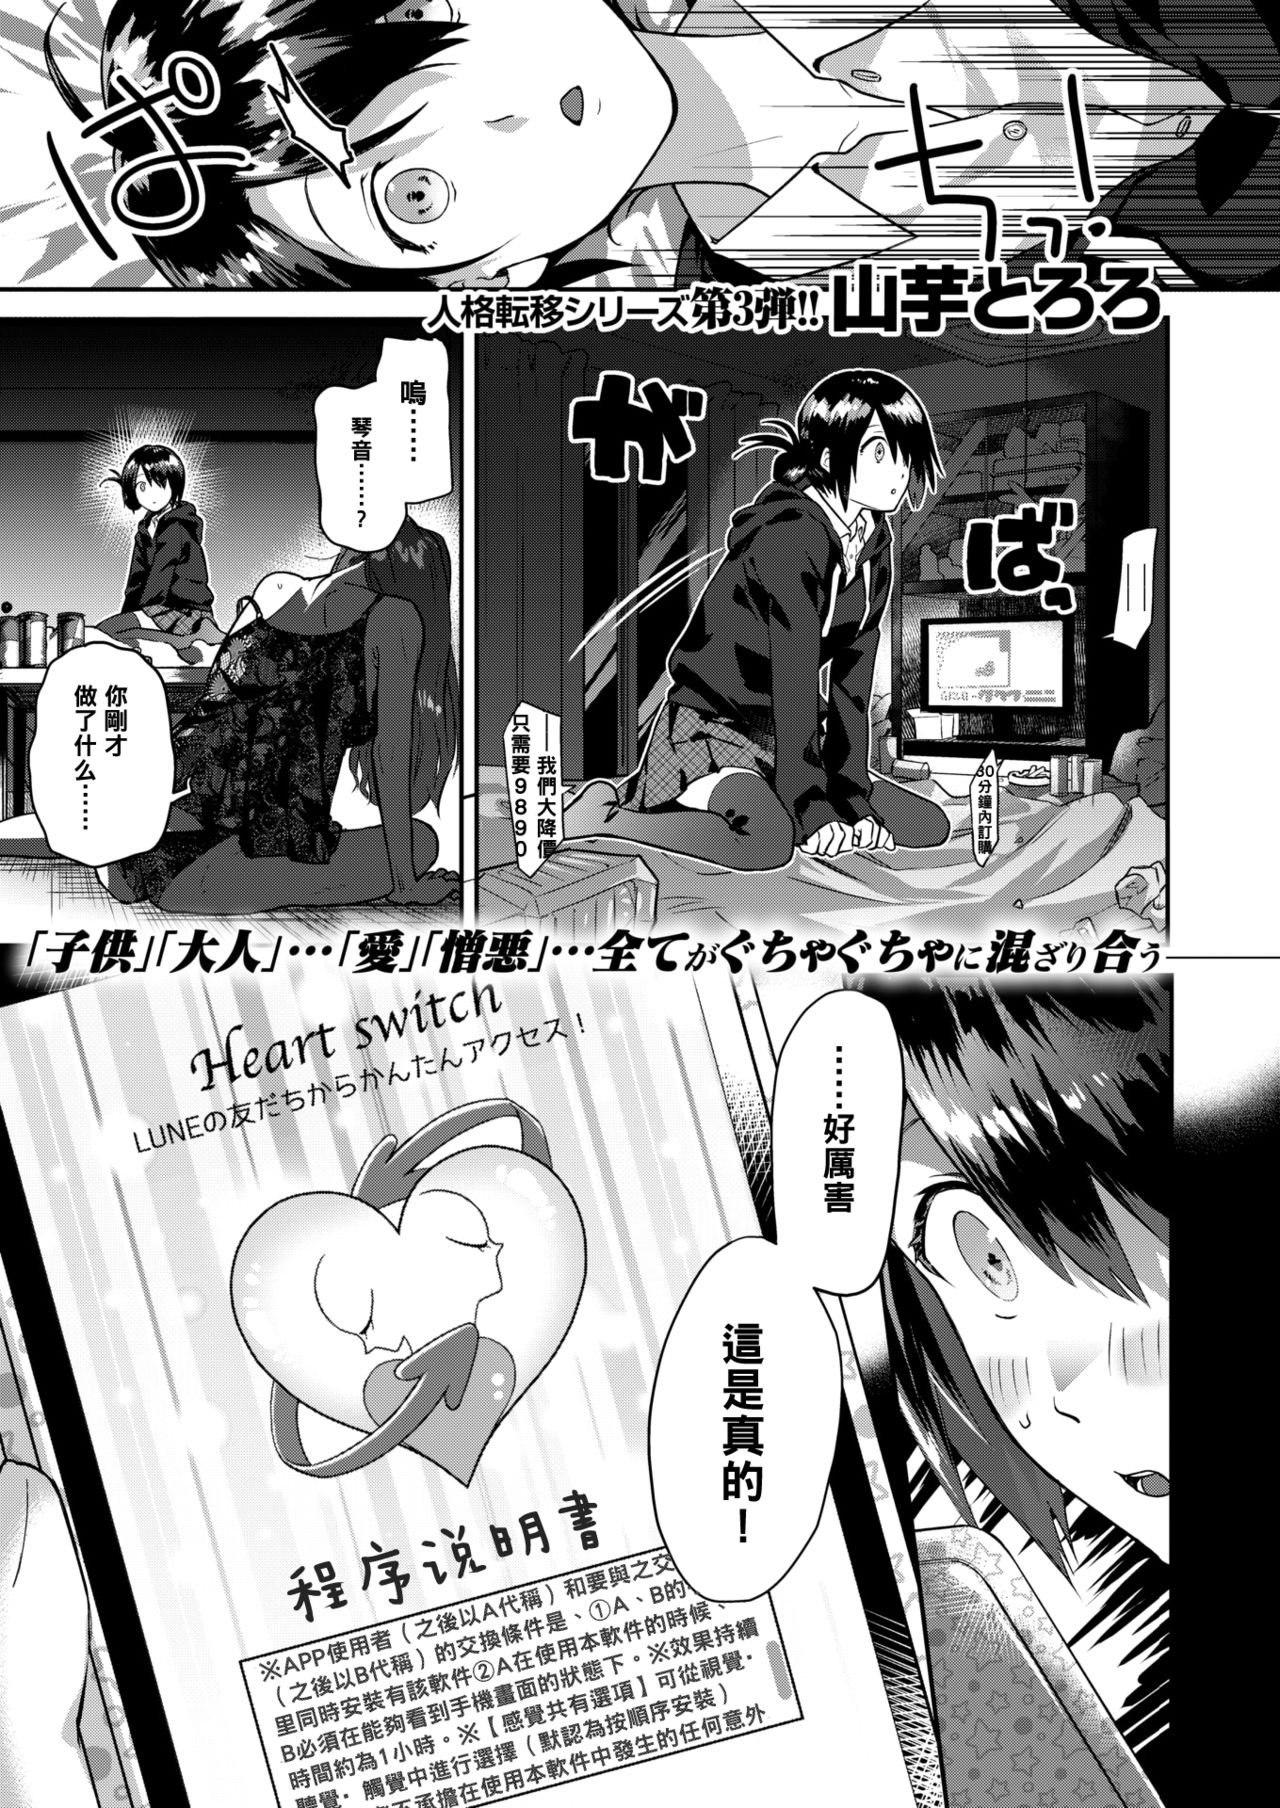 [山芋とろろ] Heart Switch～先生のお悩み編～ - 情色卡漫 -